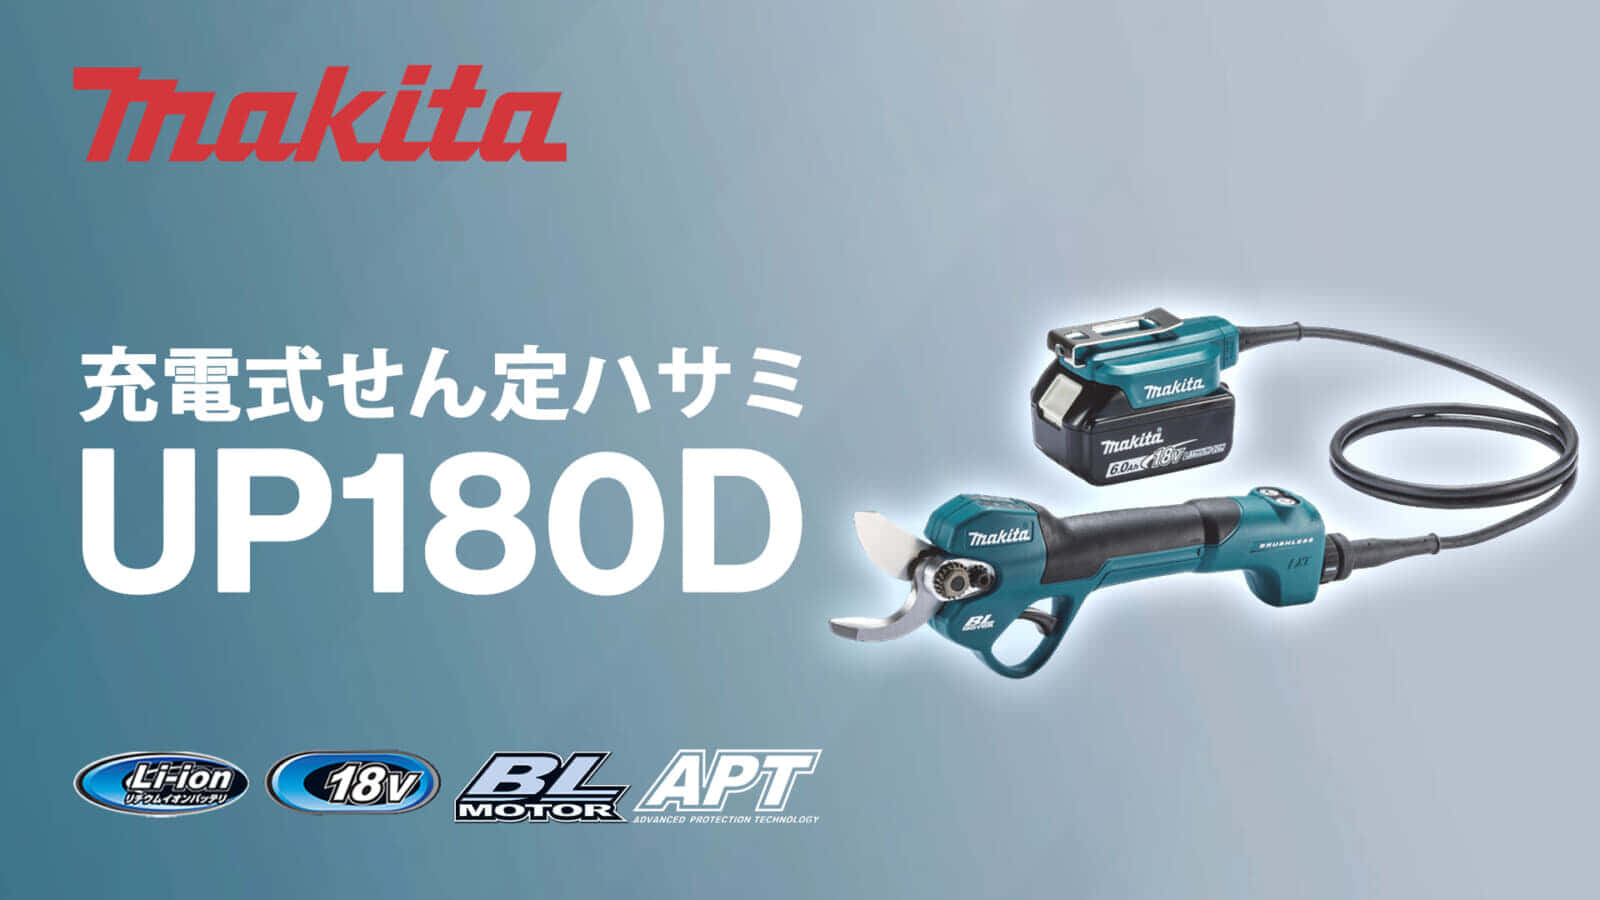 マキタ UP180D 充電式せん定ハサミを発売、18Vバッテリー対応のハイパワーモデル